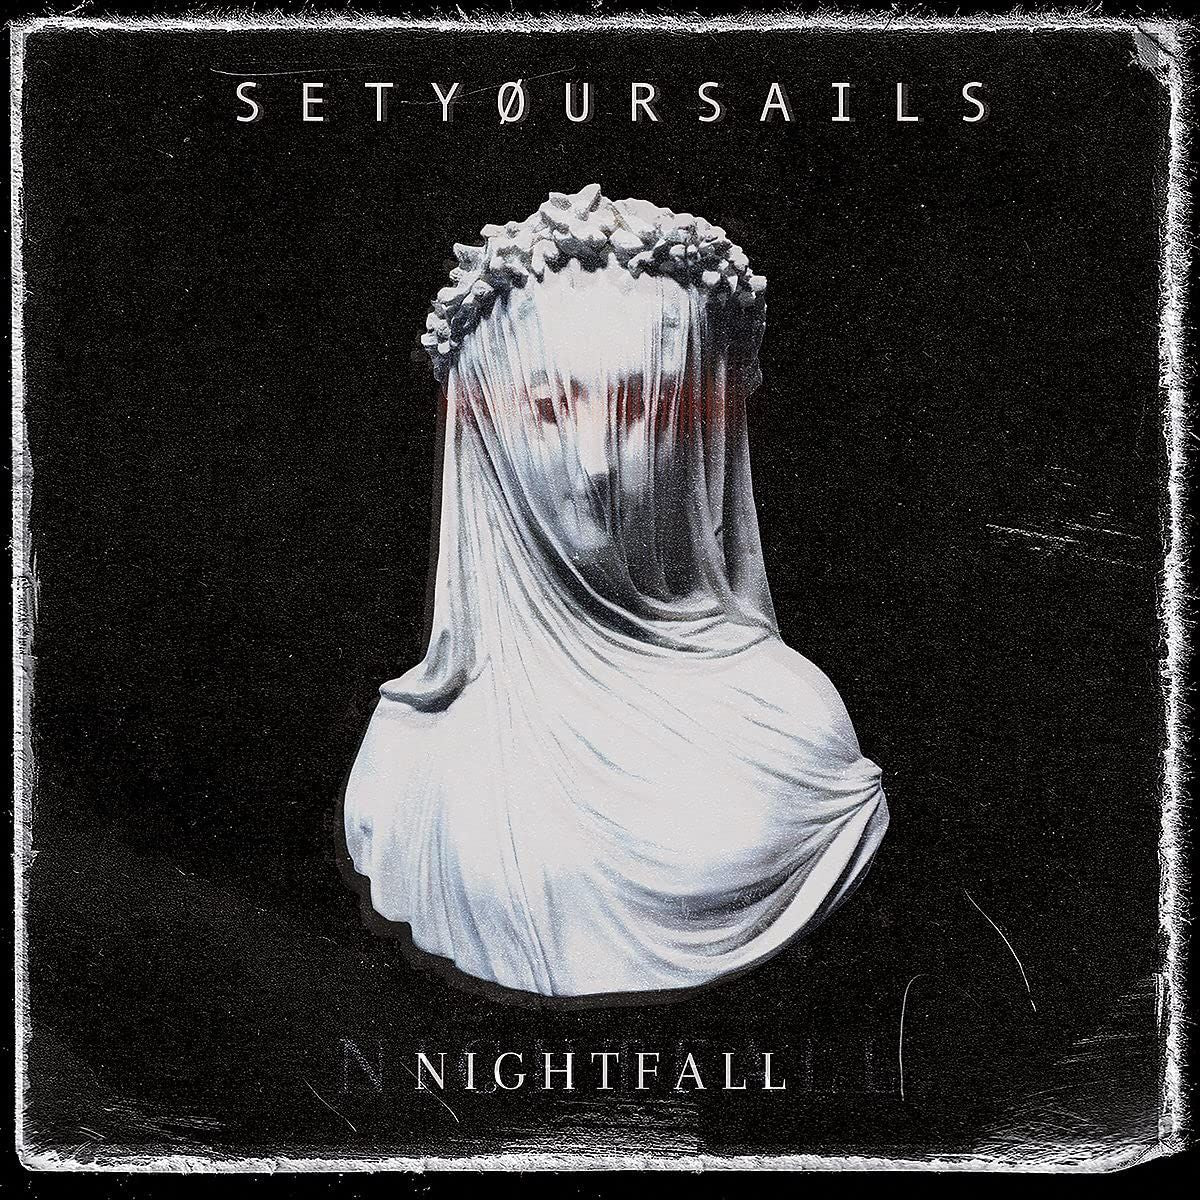 Setyoursails - Nightfall - CD - New